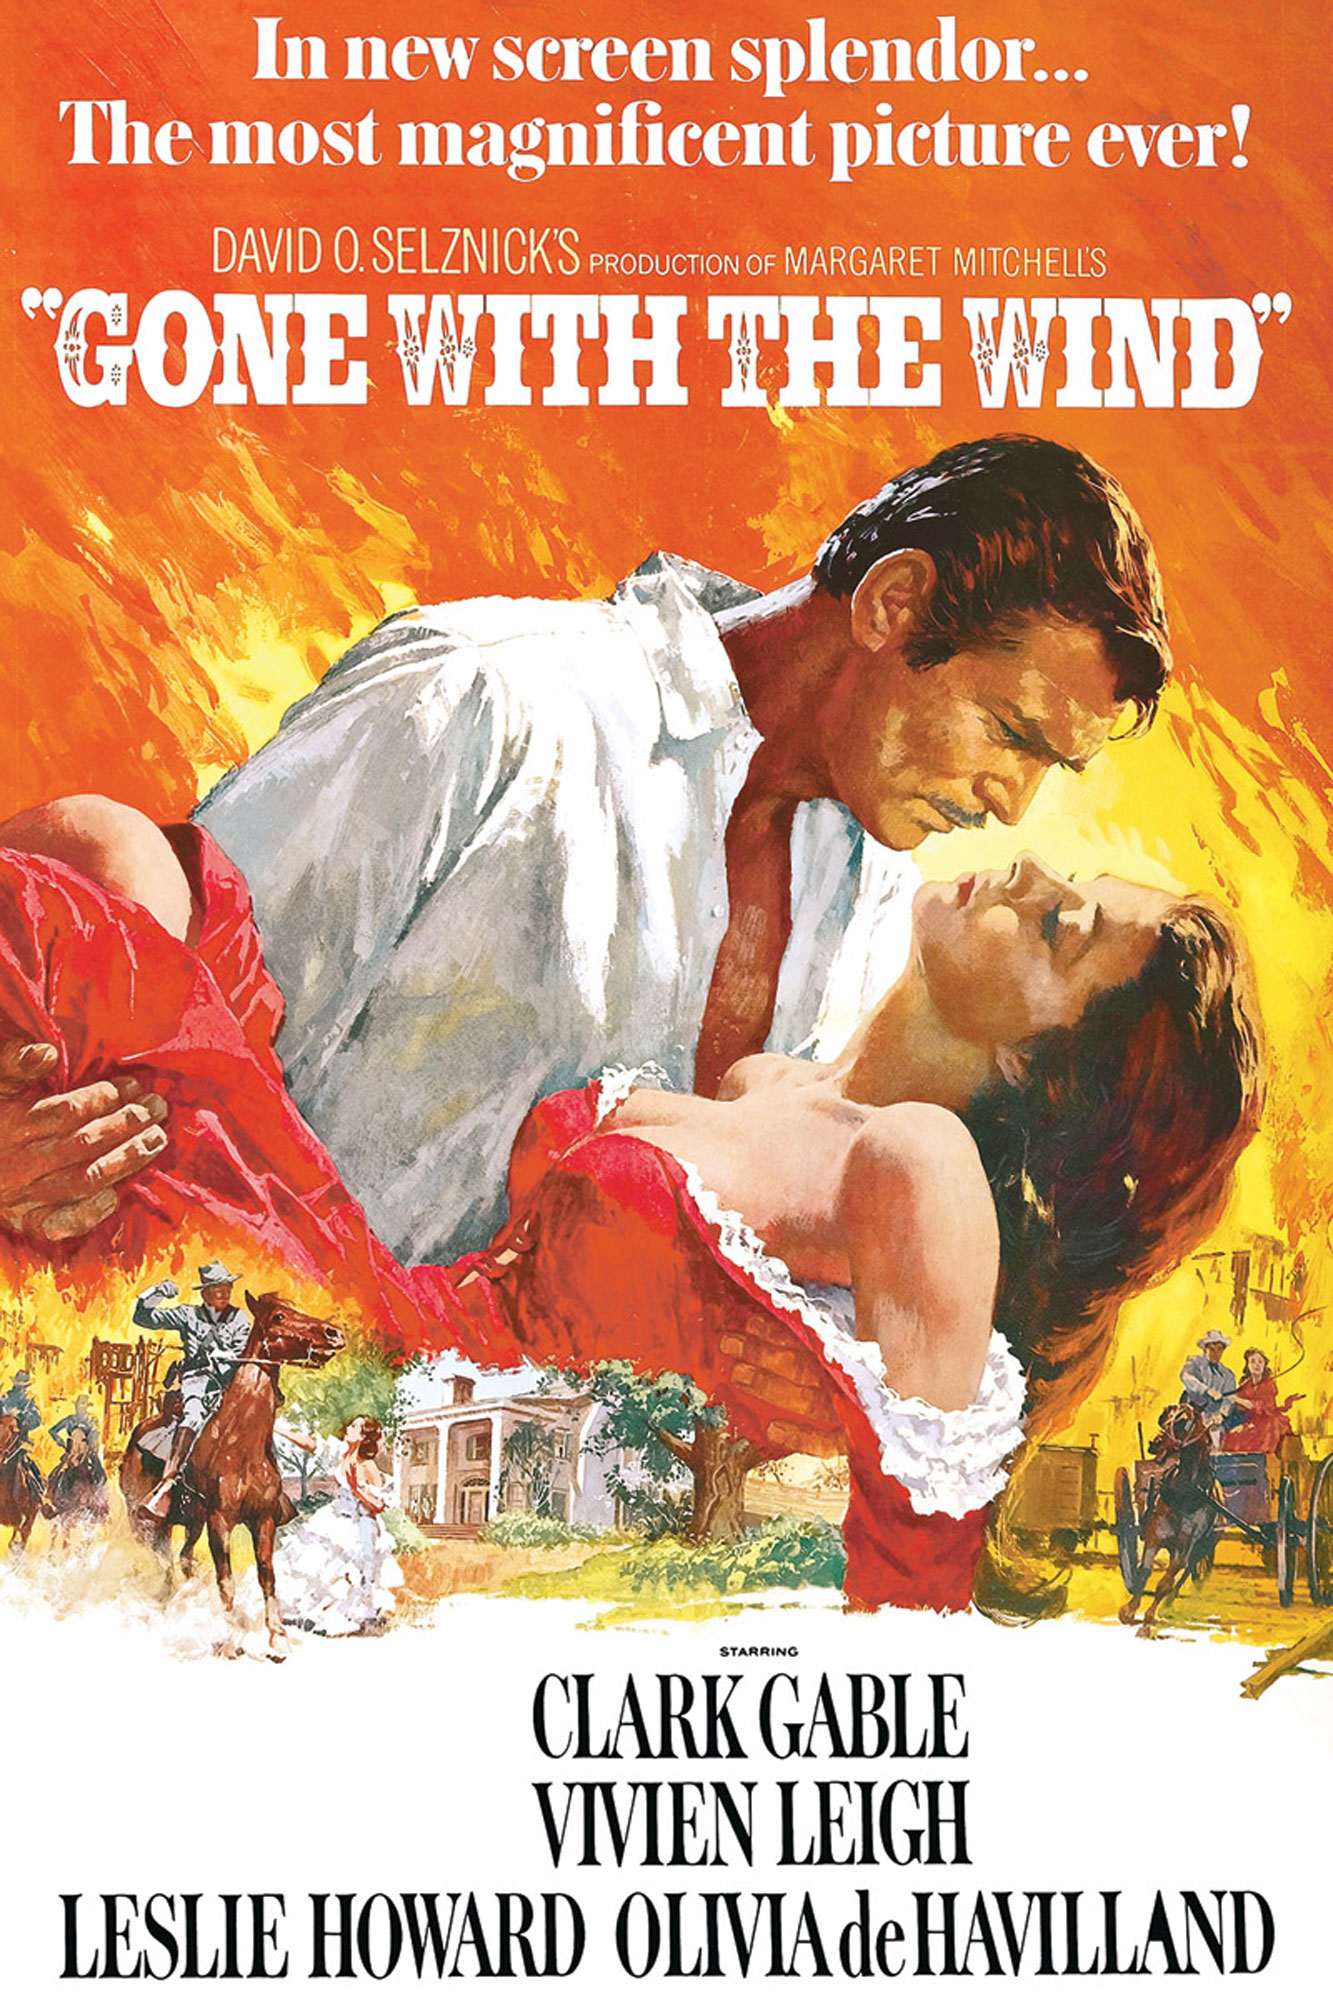 Wind Gone Winde - with vom verweht the